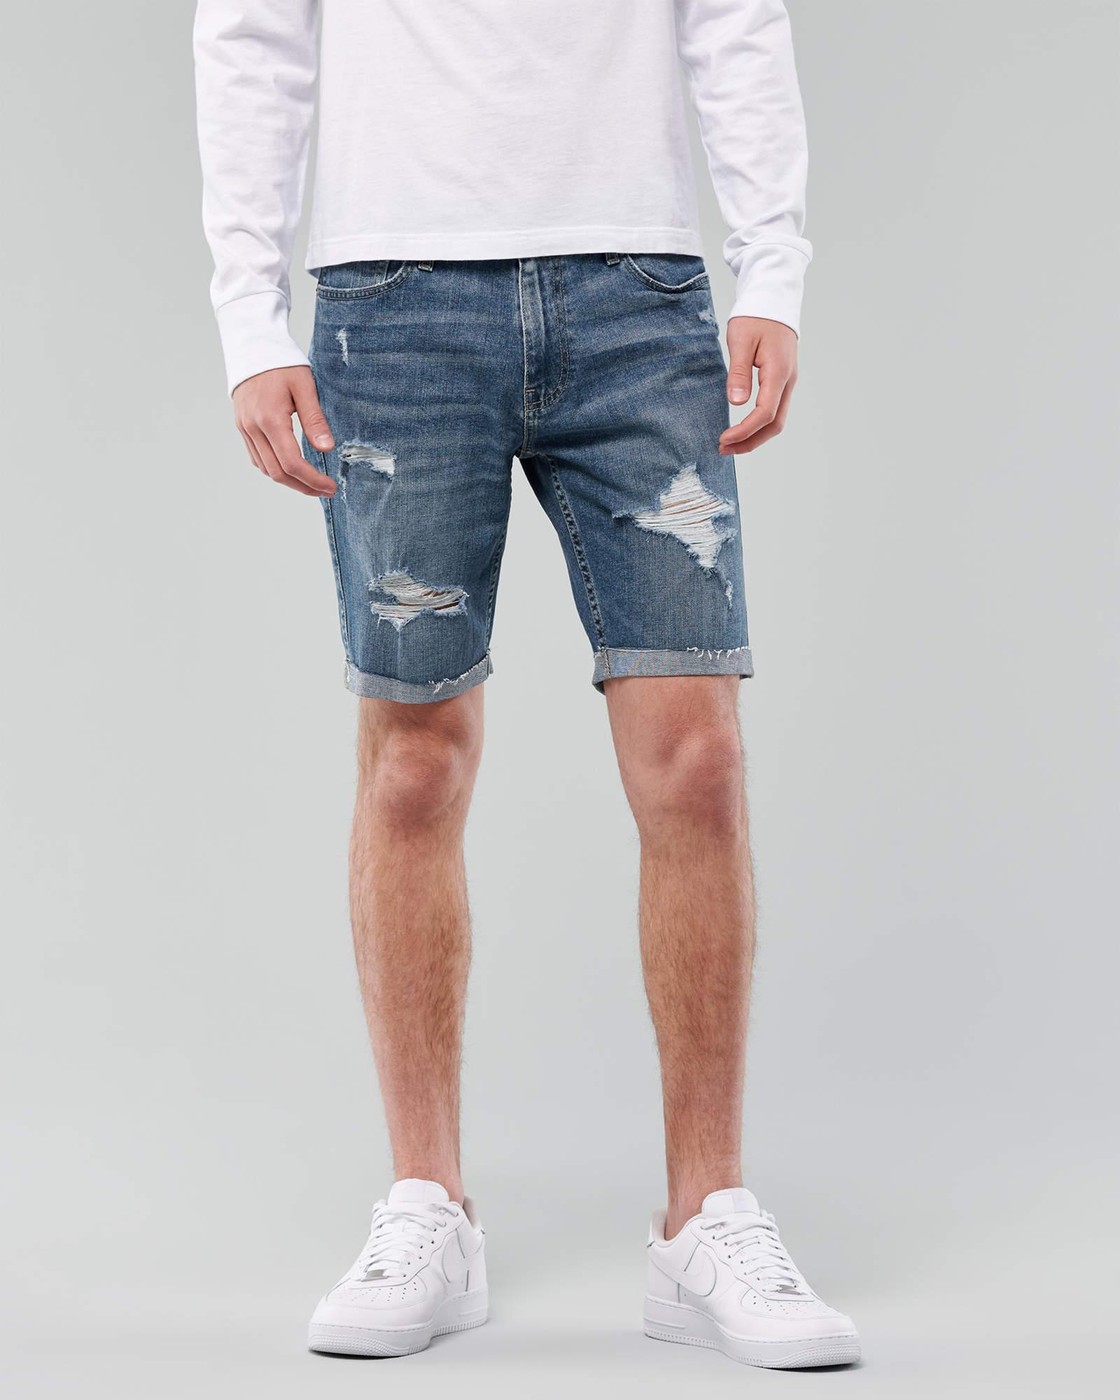 Шорты мужские - джинсовые шорты Hollister, W31, W31